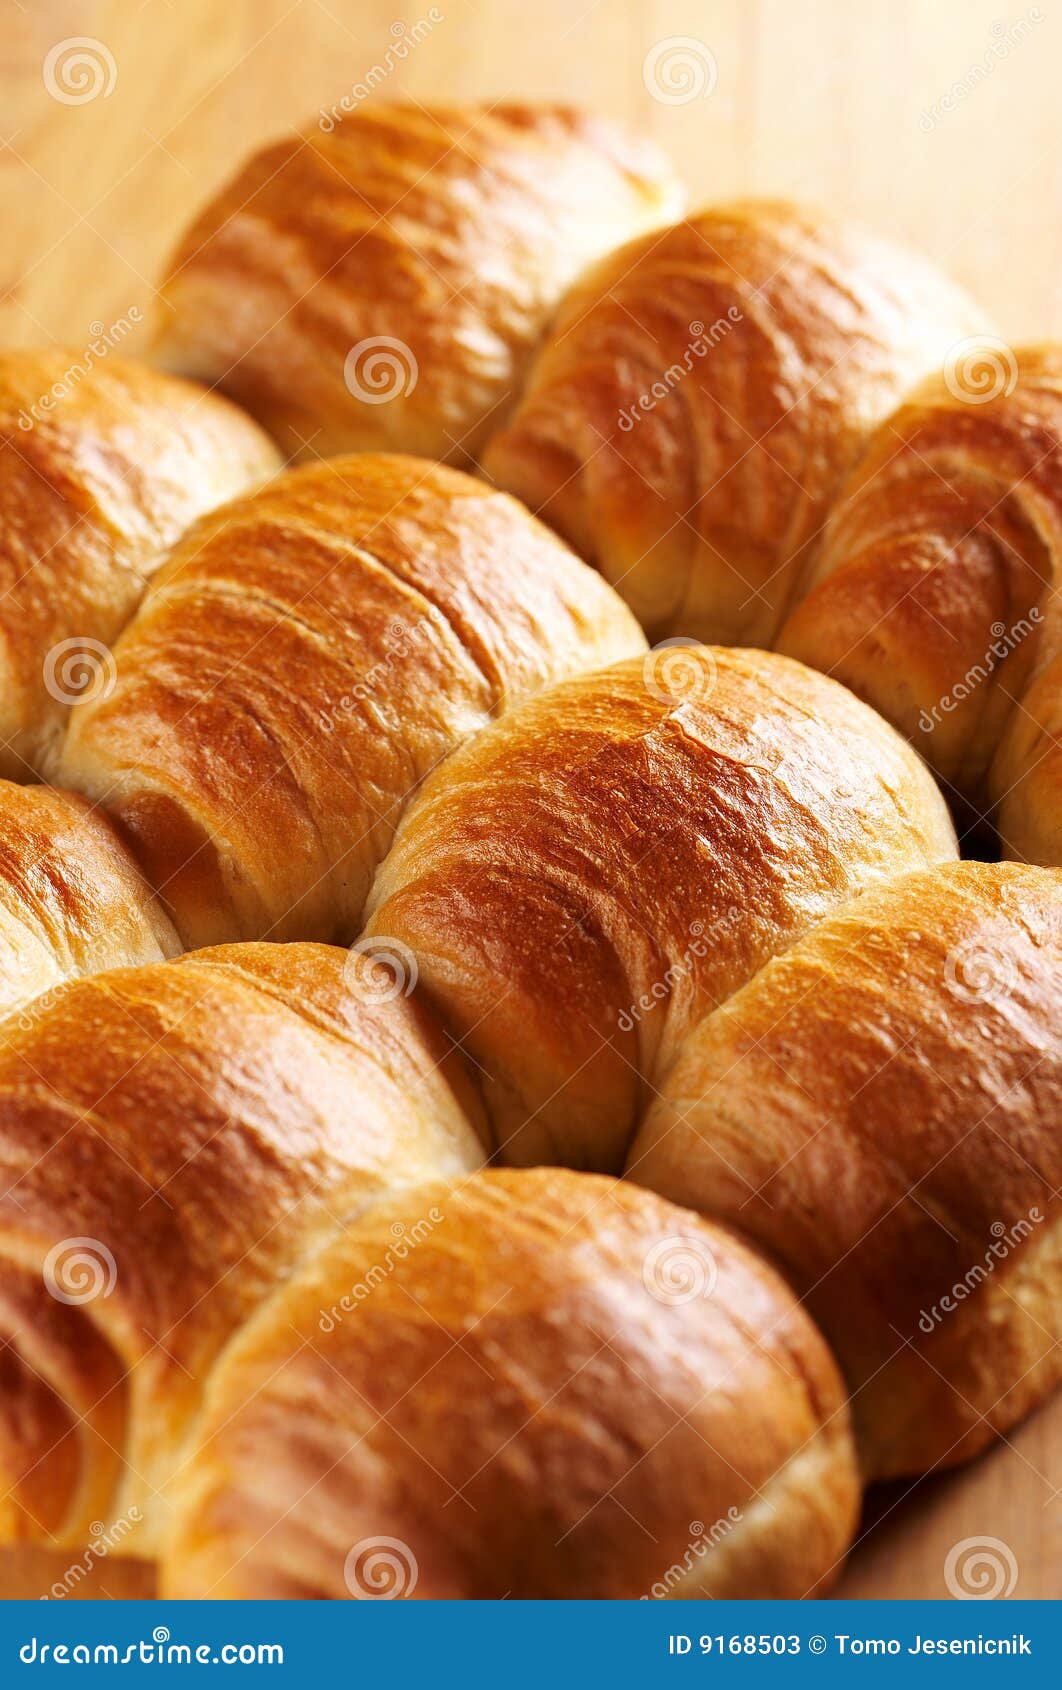 fresh crunchy bread rolls